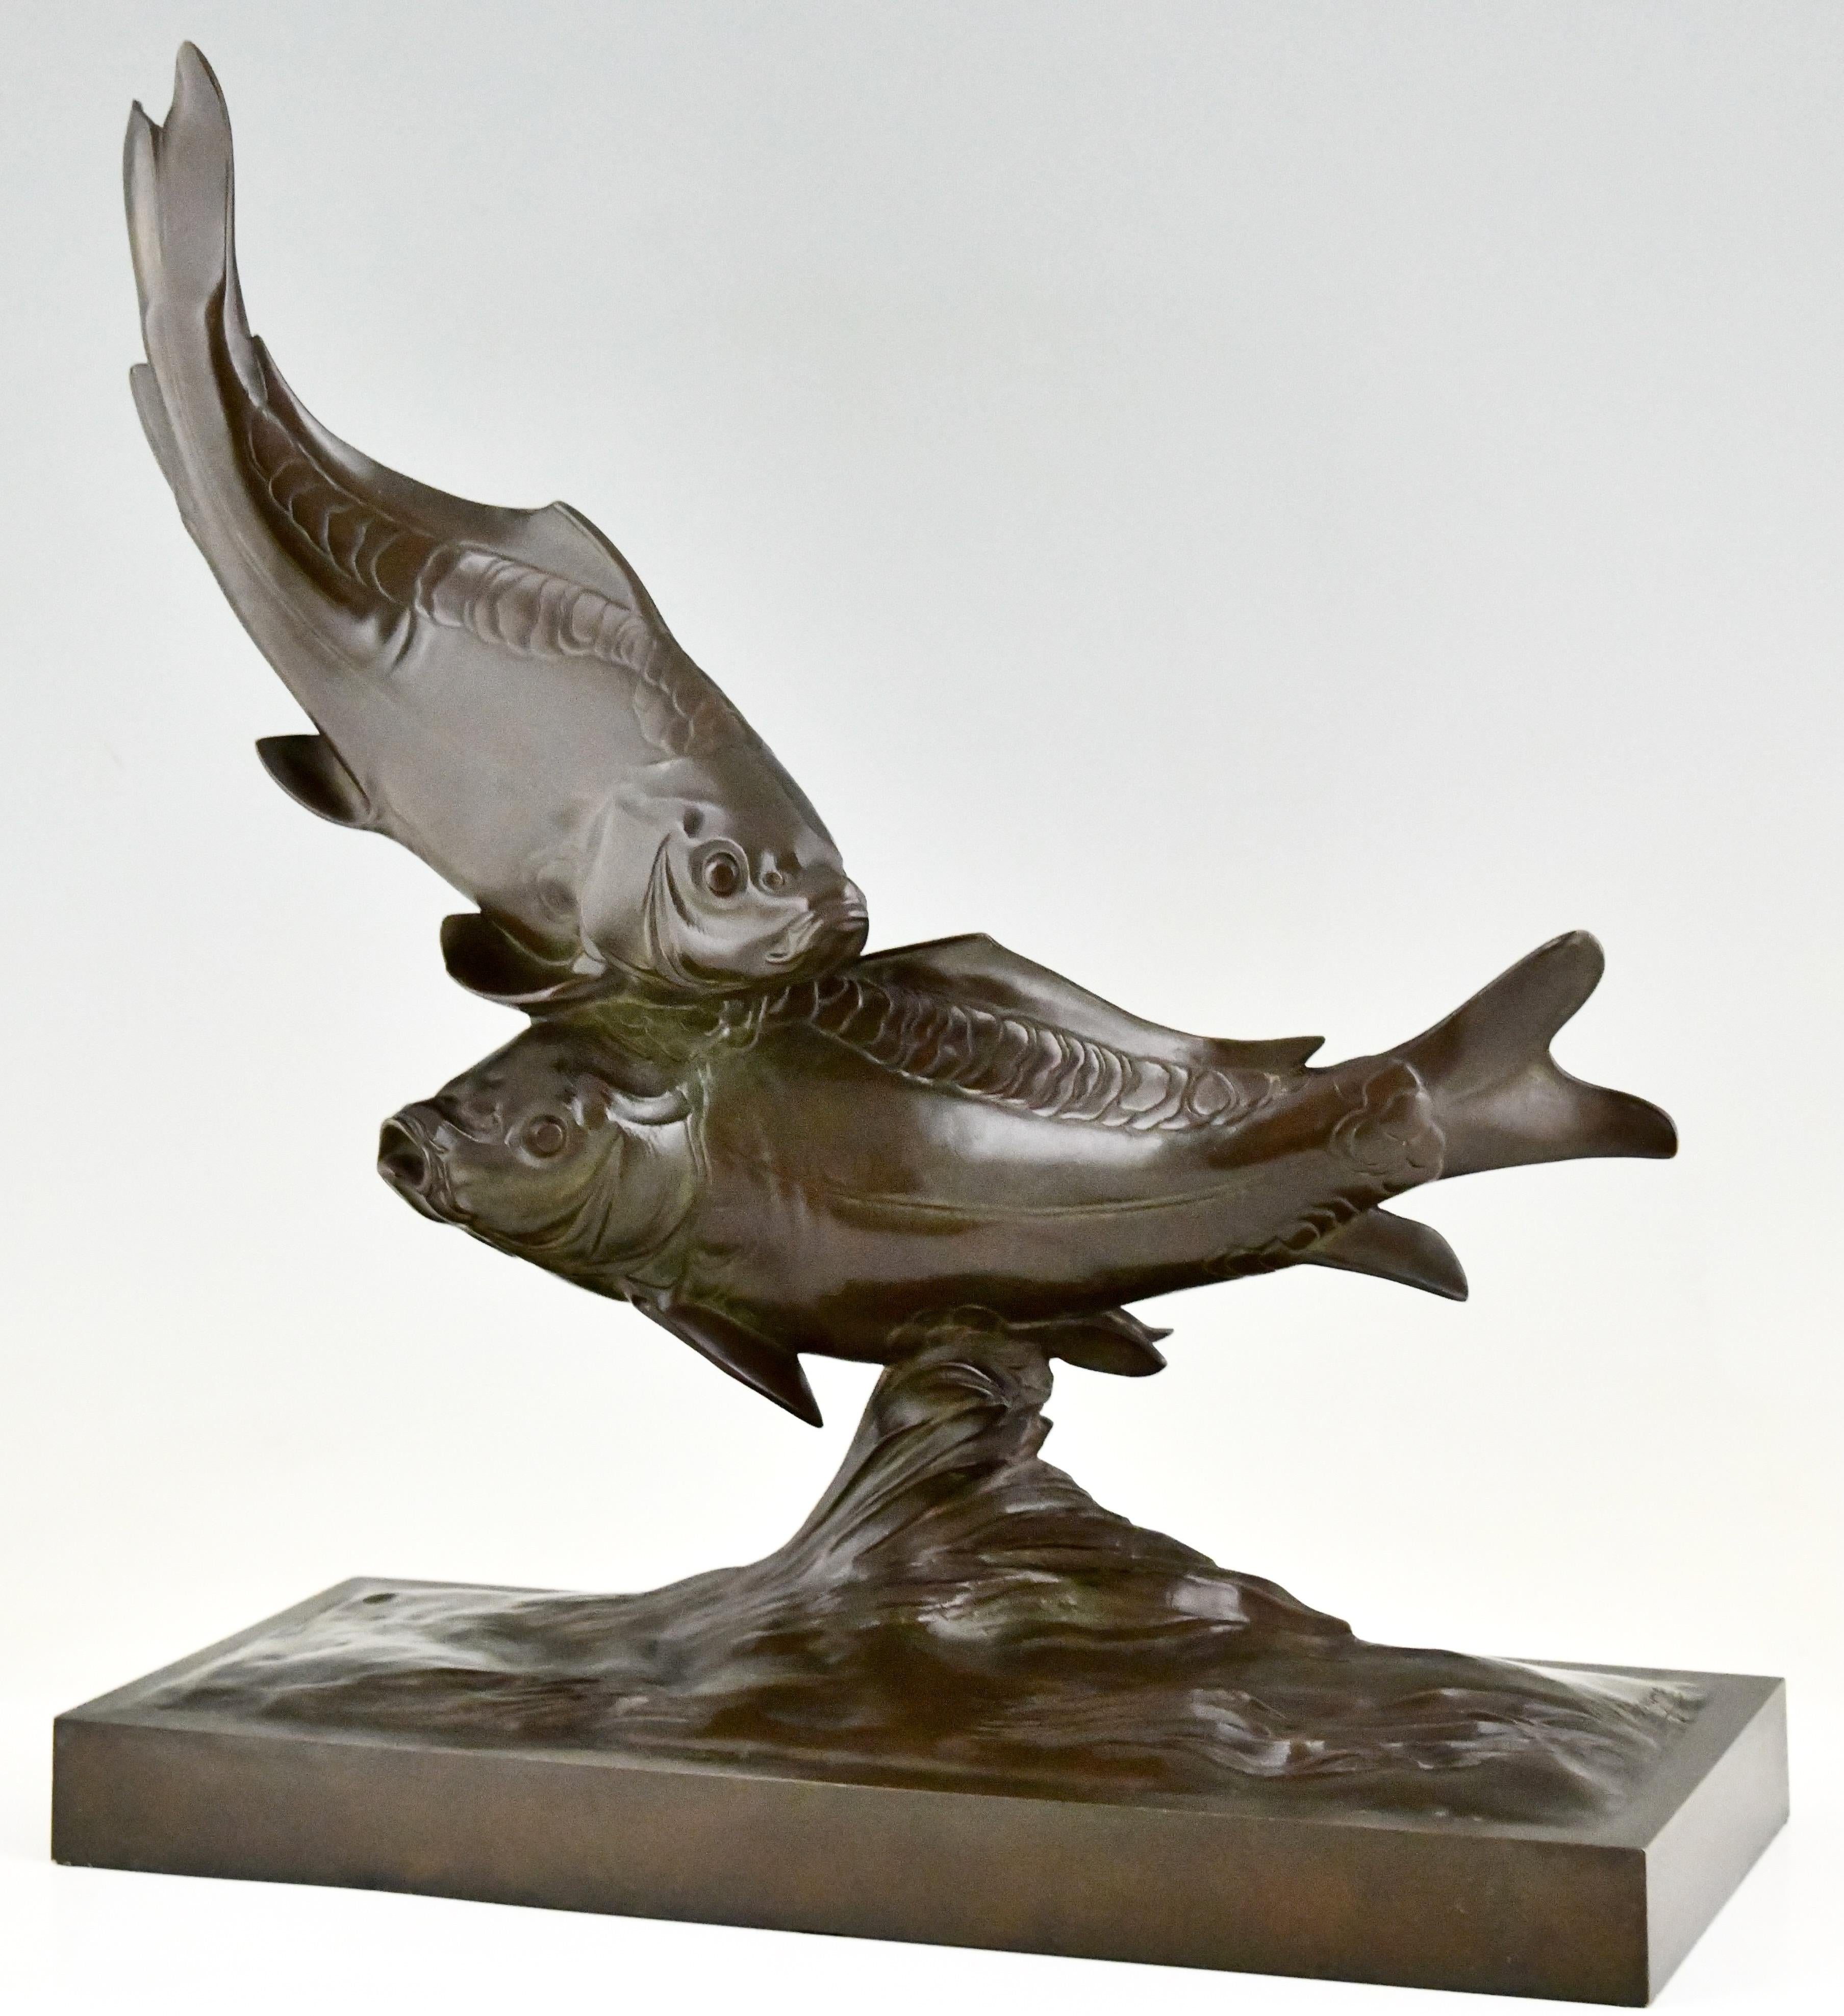 Art-Déco-Bronzeskulptur mit zwei Karpfenfischen von Santiago Bonome, 1930. 
Der Bildhauer wurde in Spanien geboren und arbeitete in Frankreich. 
Signiert Bonome mit Barbedienne Fondeur Paris. 
Bronze mit brauner Patina. 
Mit Echtheitszertifikat.